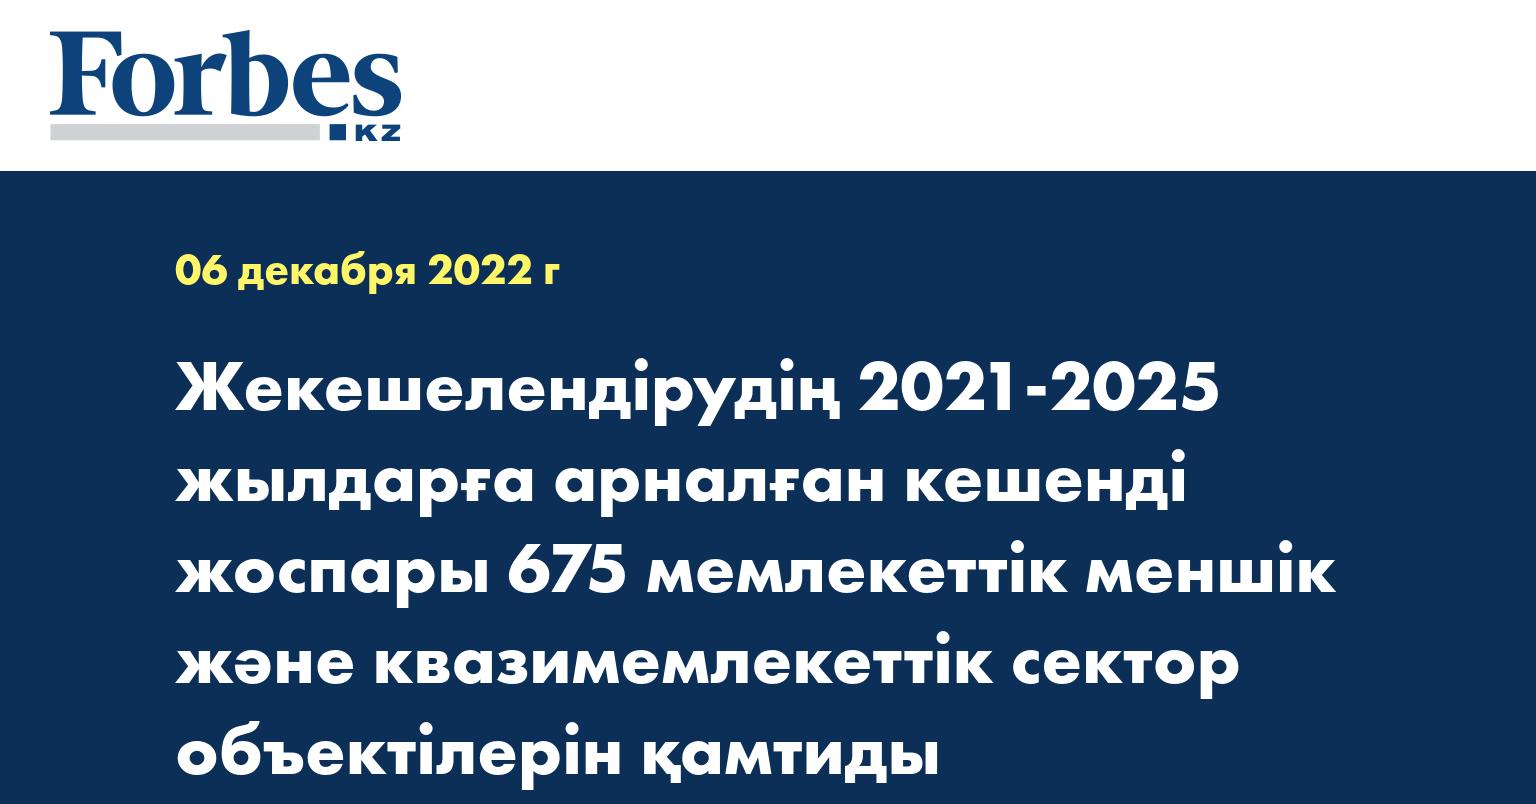 Жекешелендірудің 2021-2025 жылдарға арналған кешенді жоспары 675 мемлекеттік меншік және квазимемлекеттік сектор объектілерін қамтиды